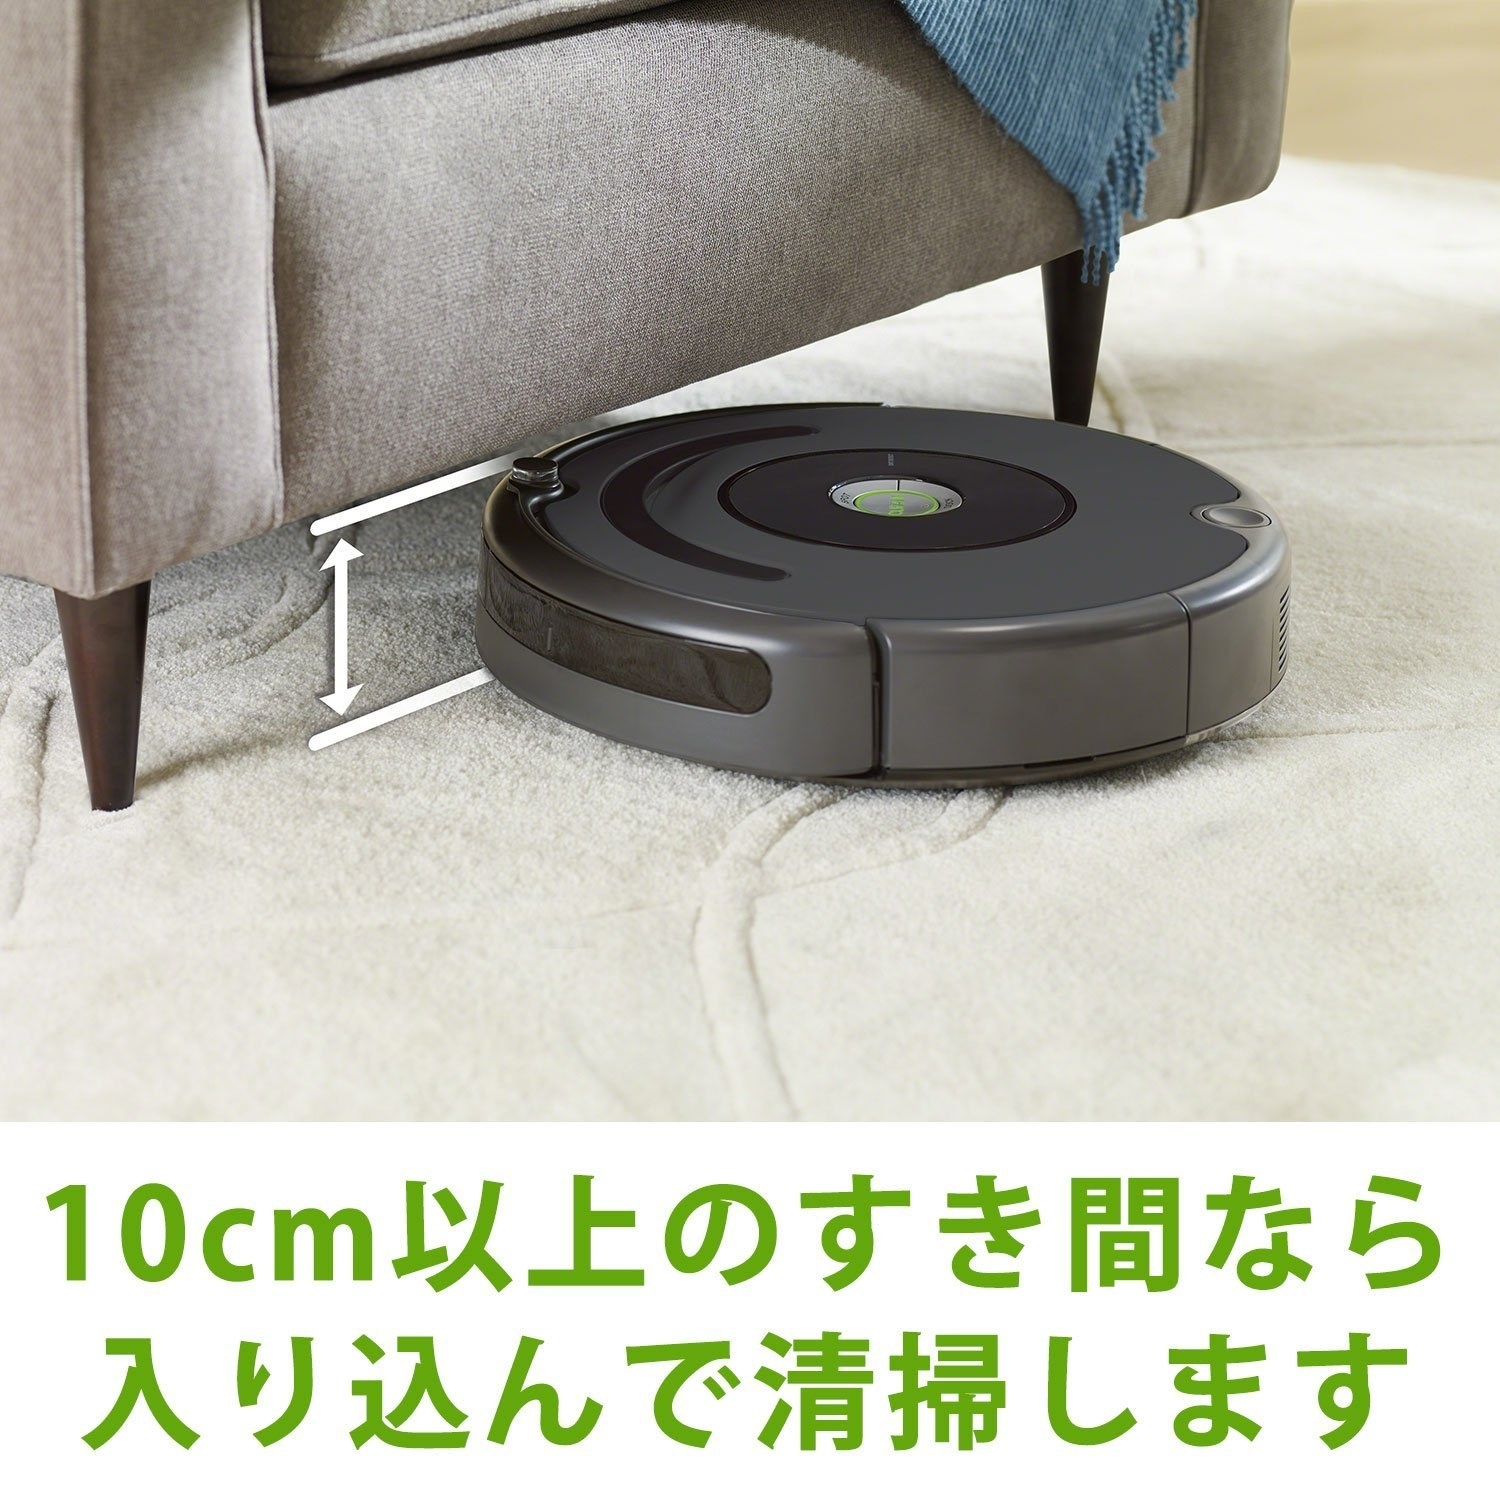 Roomba ルンバ エンハンスドクリーニングヘッド 【並行輸入品